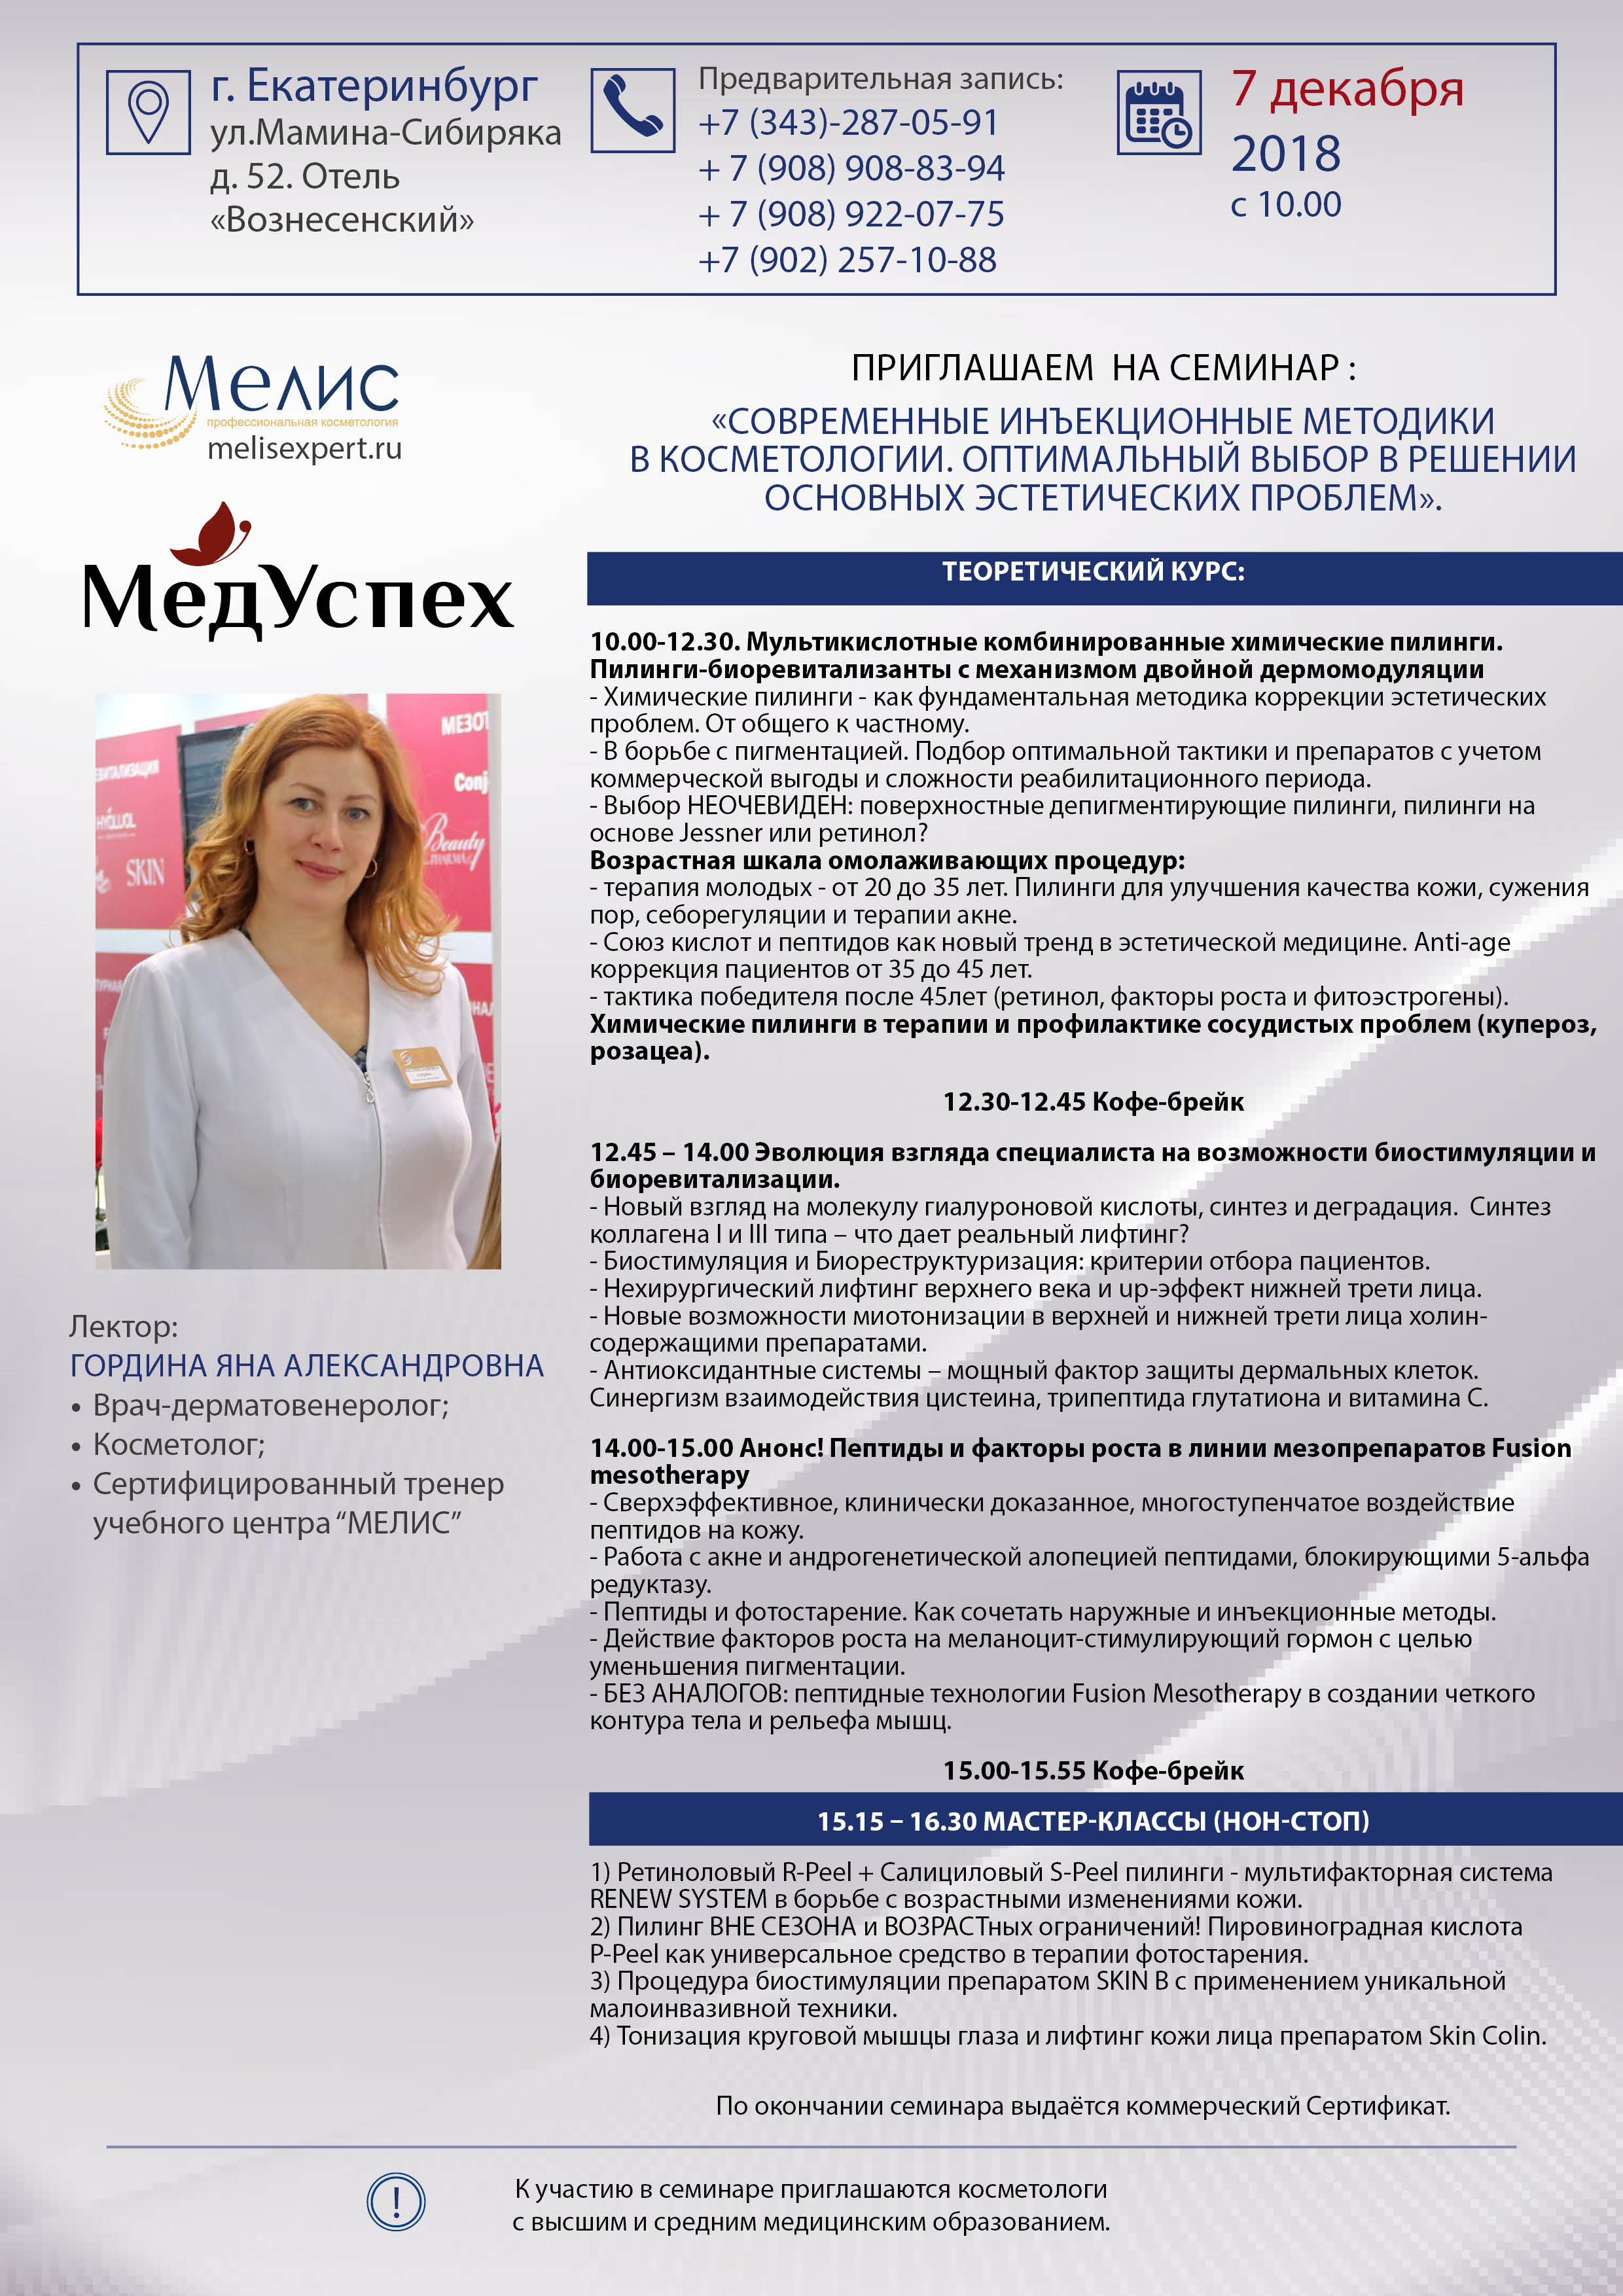 7 декбря 2018 г. в Екатеринбурге состоится семинар Современные инъекционные методики в косметологии. Оптимальный выбор в решении основных эстетических проблем